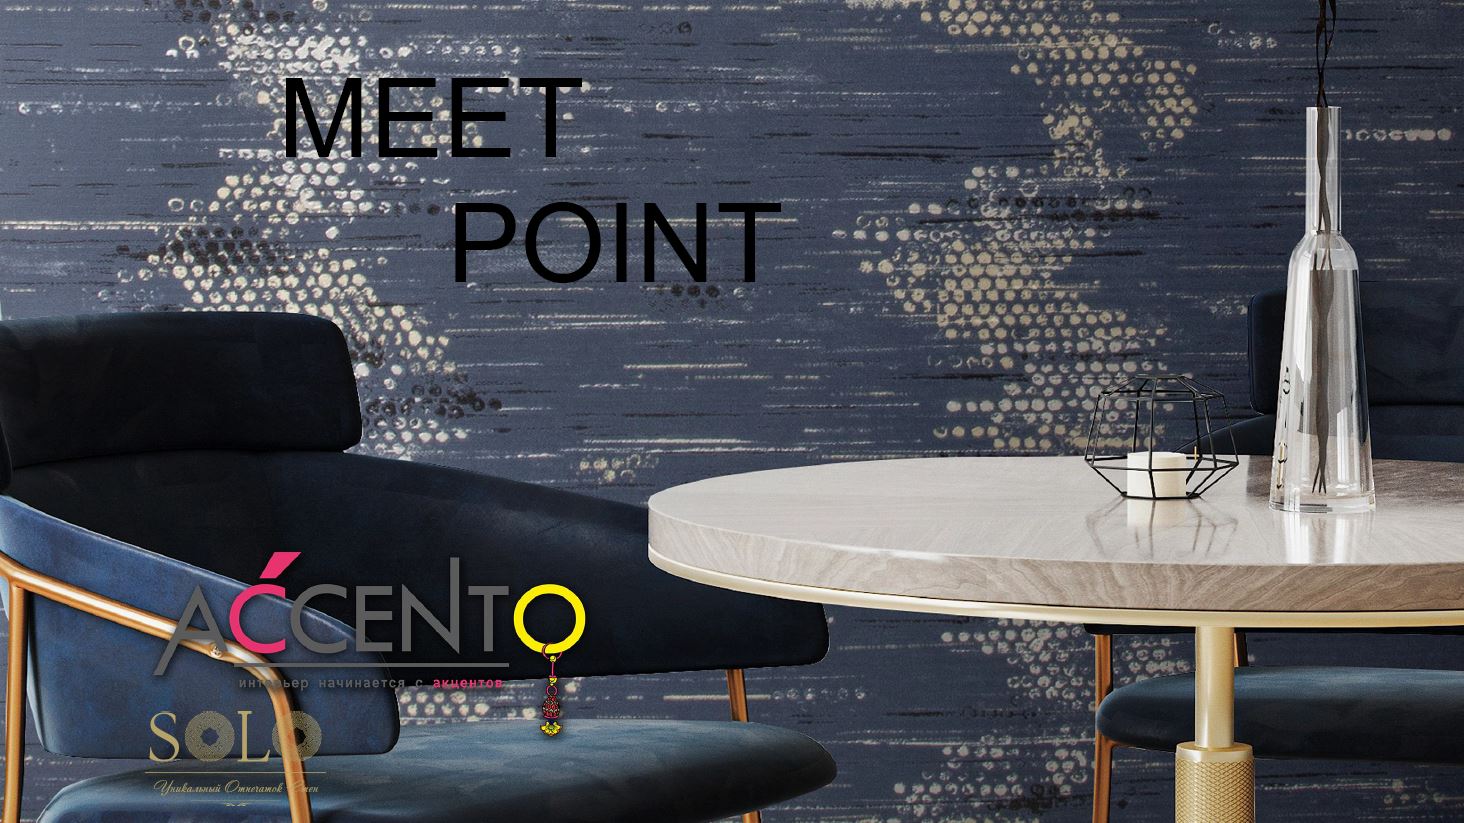 Графичный дизайн в коллекции Meet Point от бренда Accento.